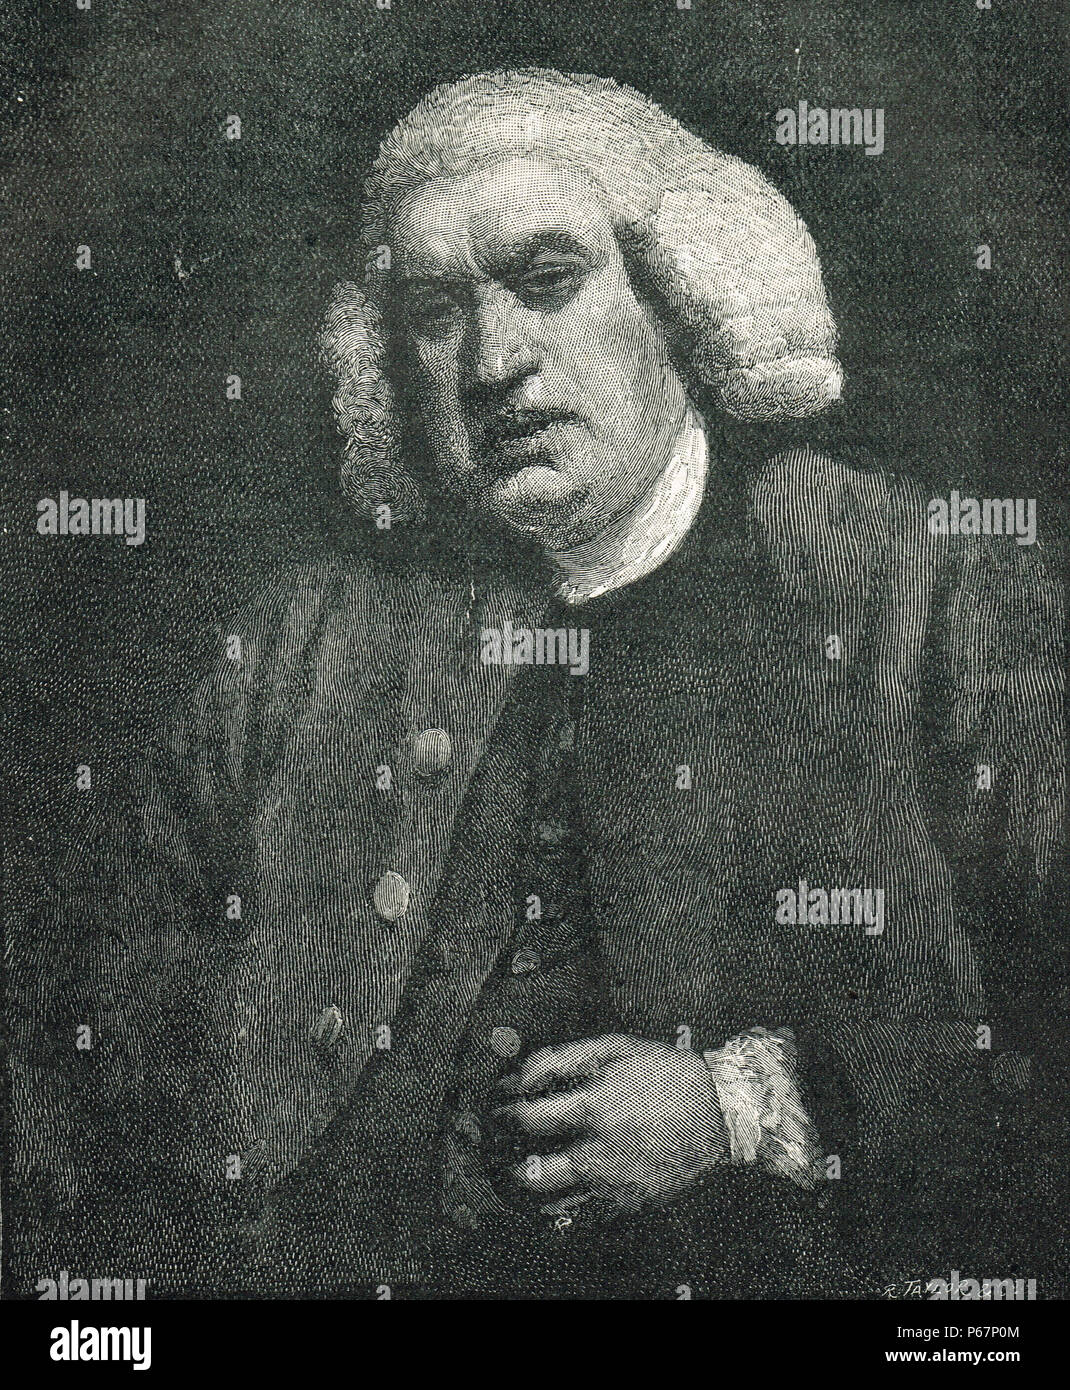 Dr. Samuel Johnson, 1709-1784, poeta, ensayista, moralista, crítico literario, biógrafo, editor, lexicógrafo Foto de stock